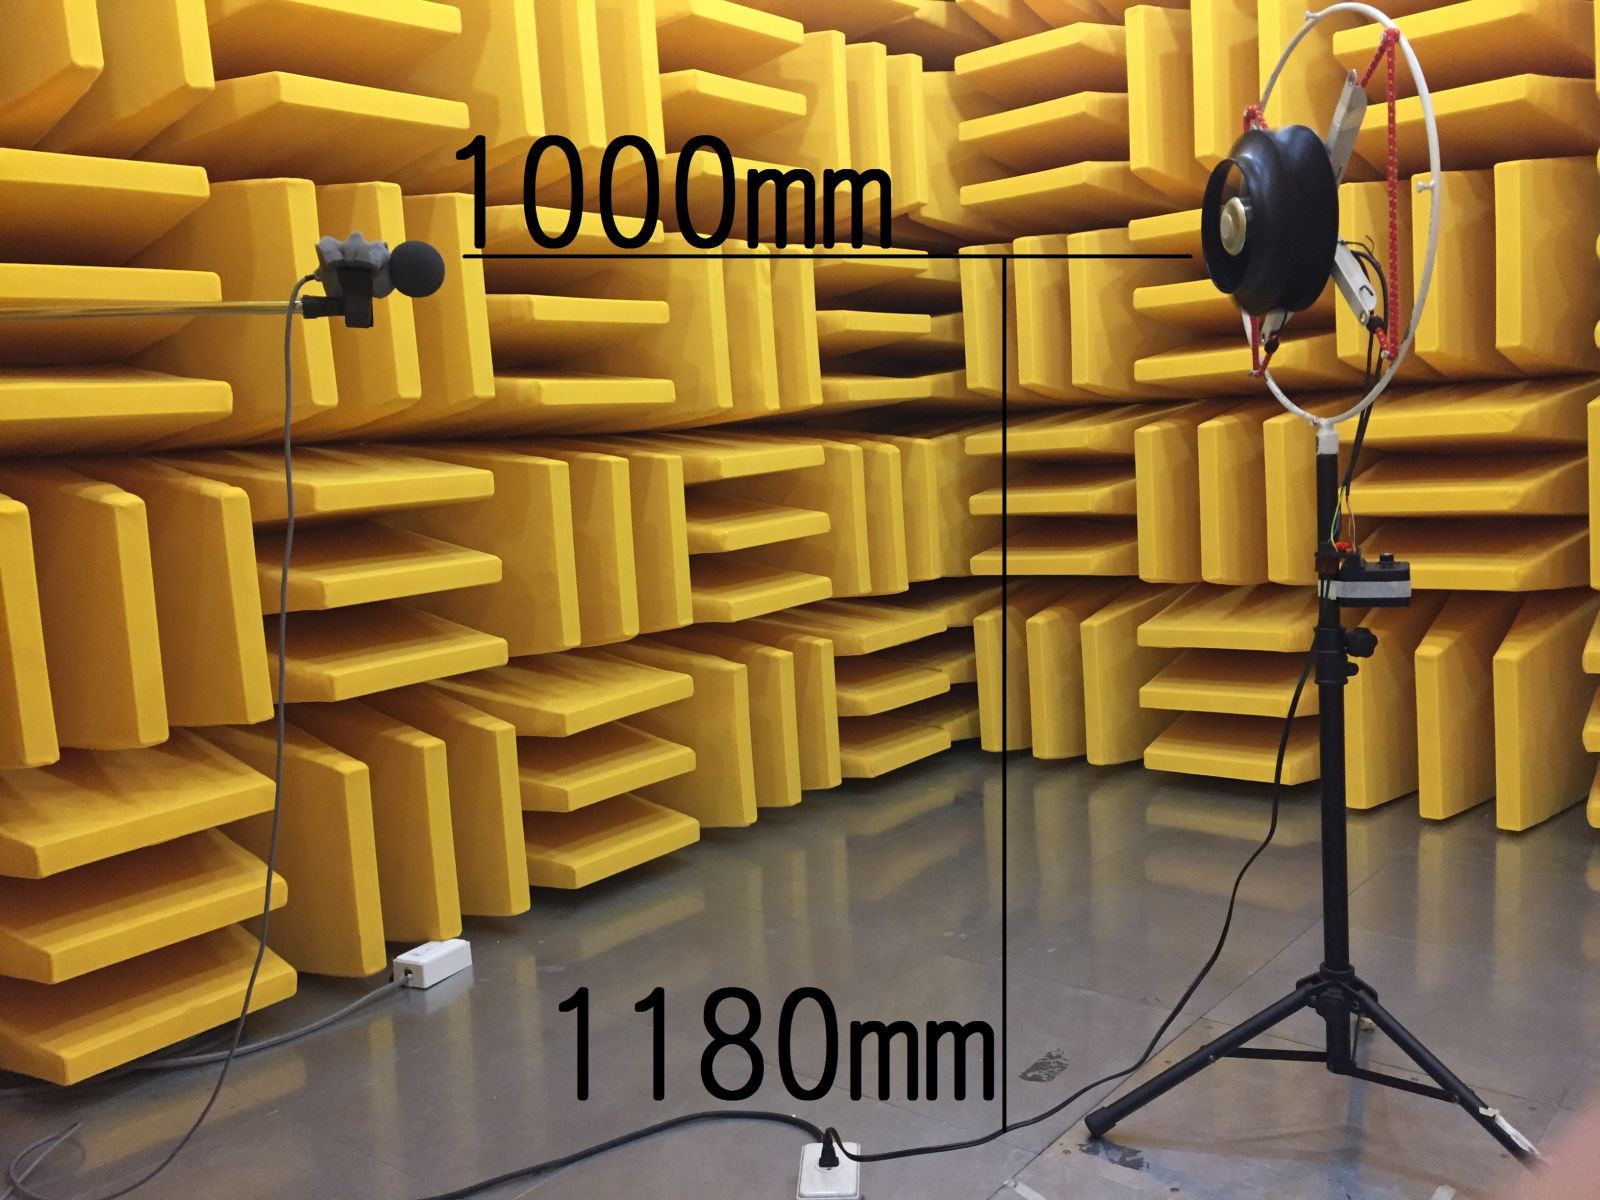 福佑電機噪音測試方法 無響室 風扇噪音測試 Fulltech noise testing 